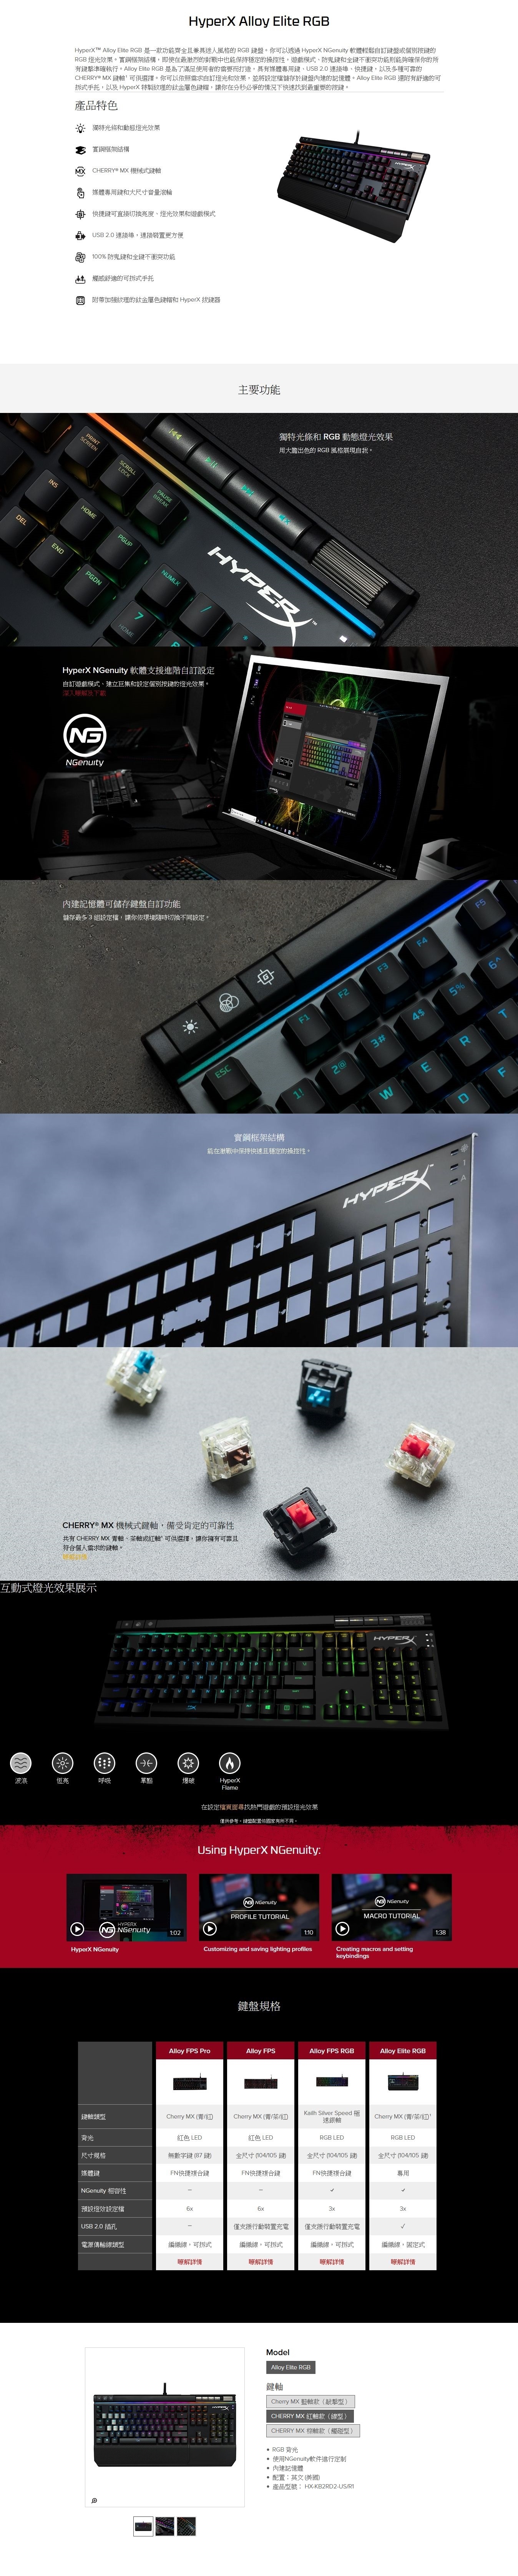 HyperX Alloy Elite 機械式 電競鍵盤 (英文-Cherry MX 紅軸)